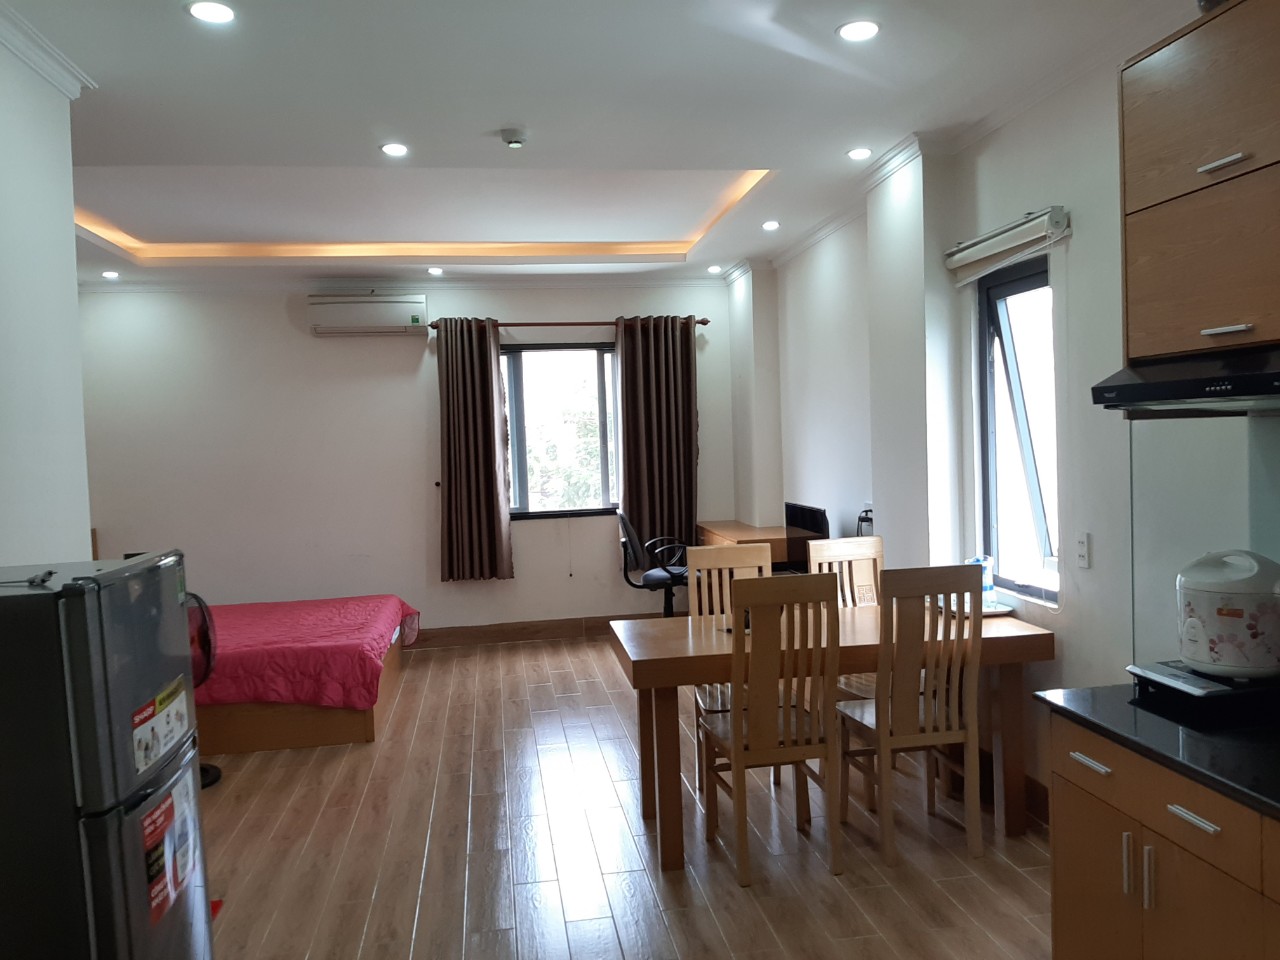 Cho thuê căn hộ Đà Nẵng cách biển 50m,còn 1 căn duy nhất,full nội thất đẹp,7 tr/ tháng.0983.750.220
 10342612